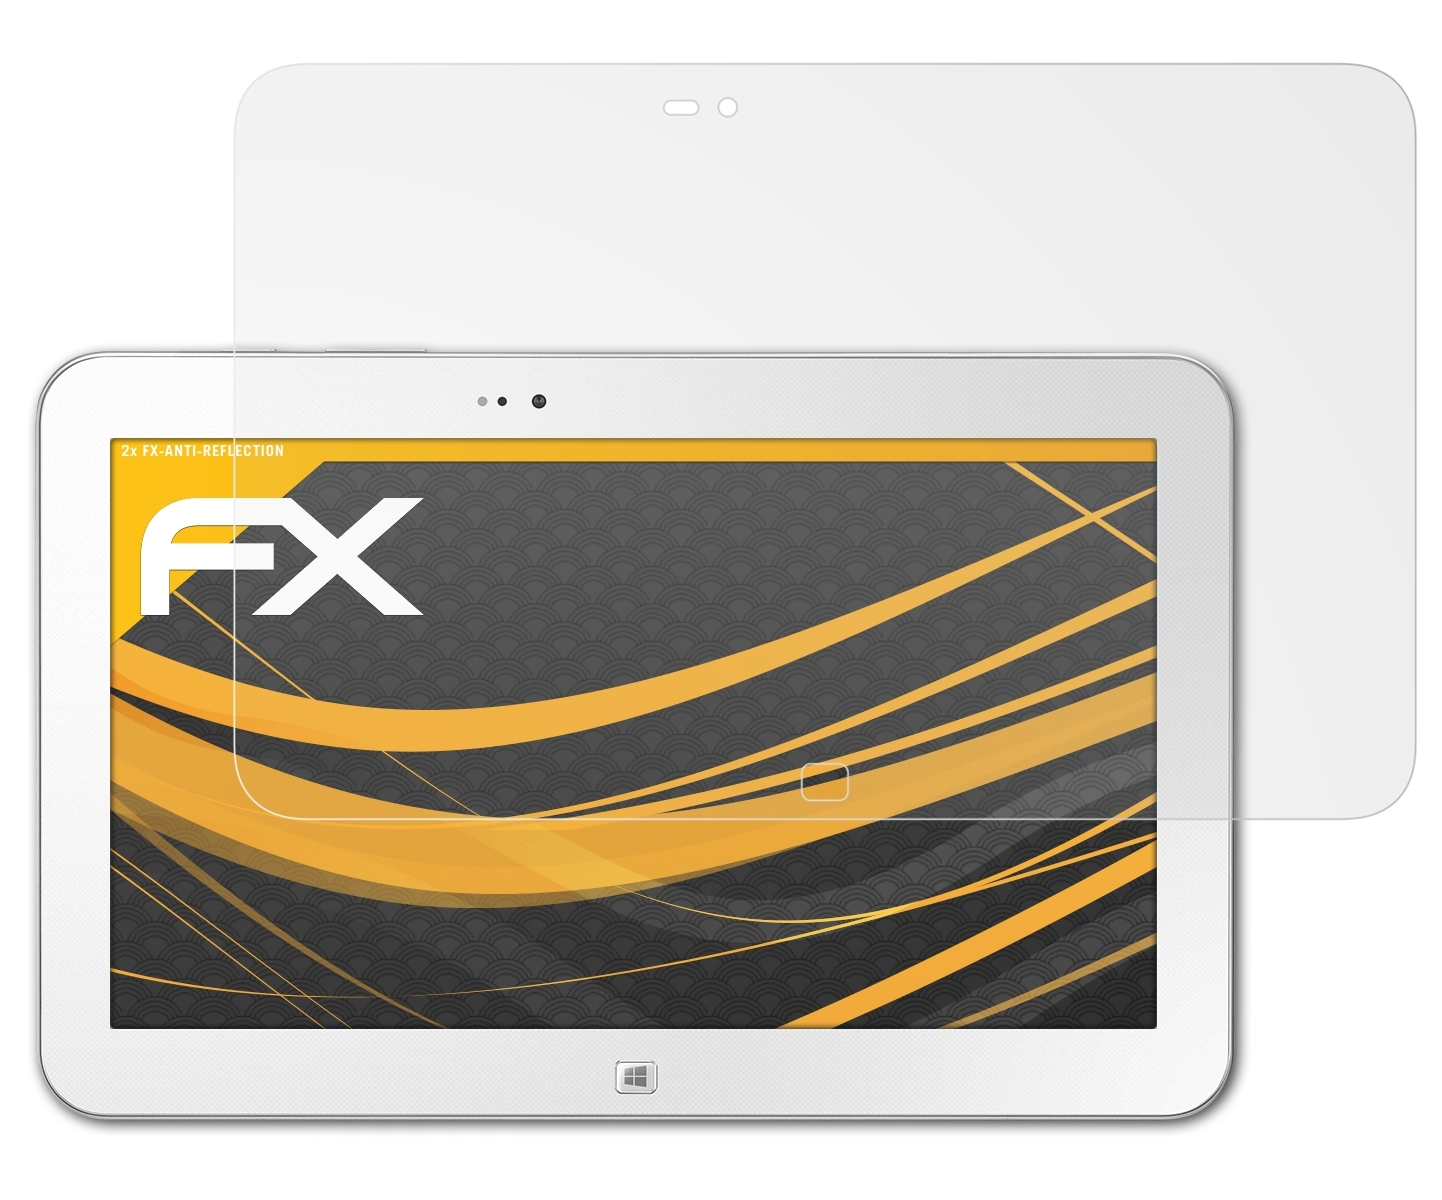 3) Ativ 2x Tab Samsung ATFOLIX Displayschutz(für FX-Antireflex